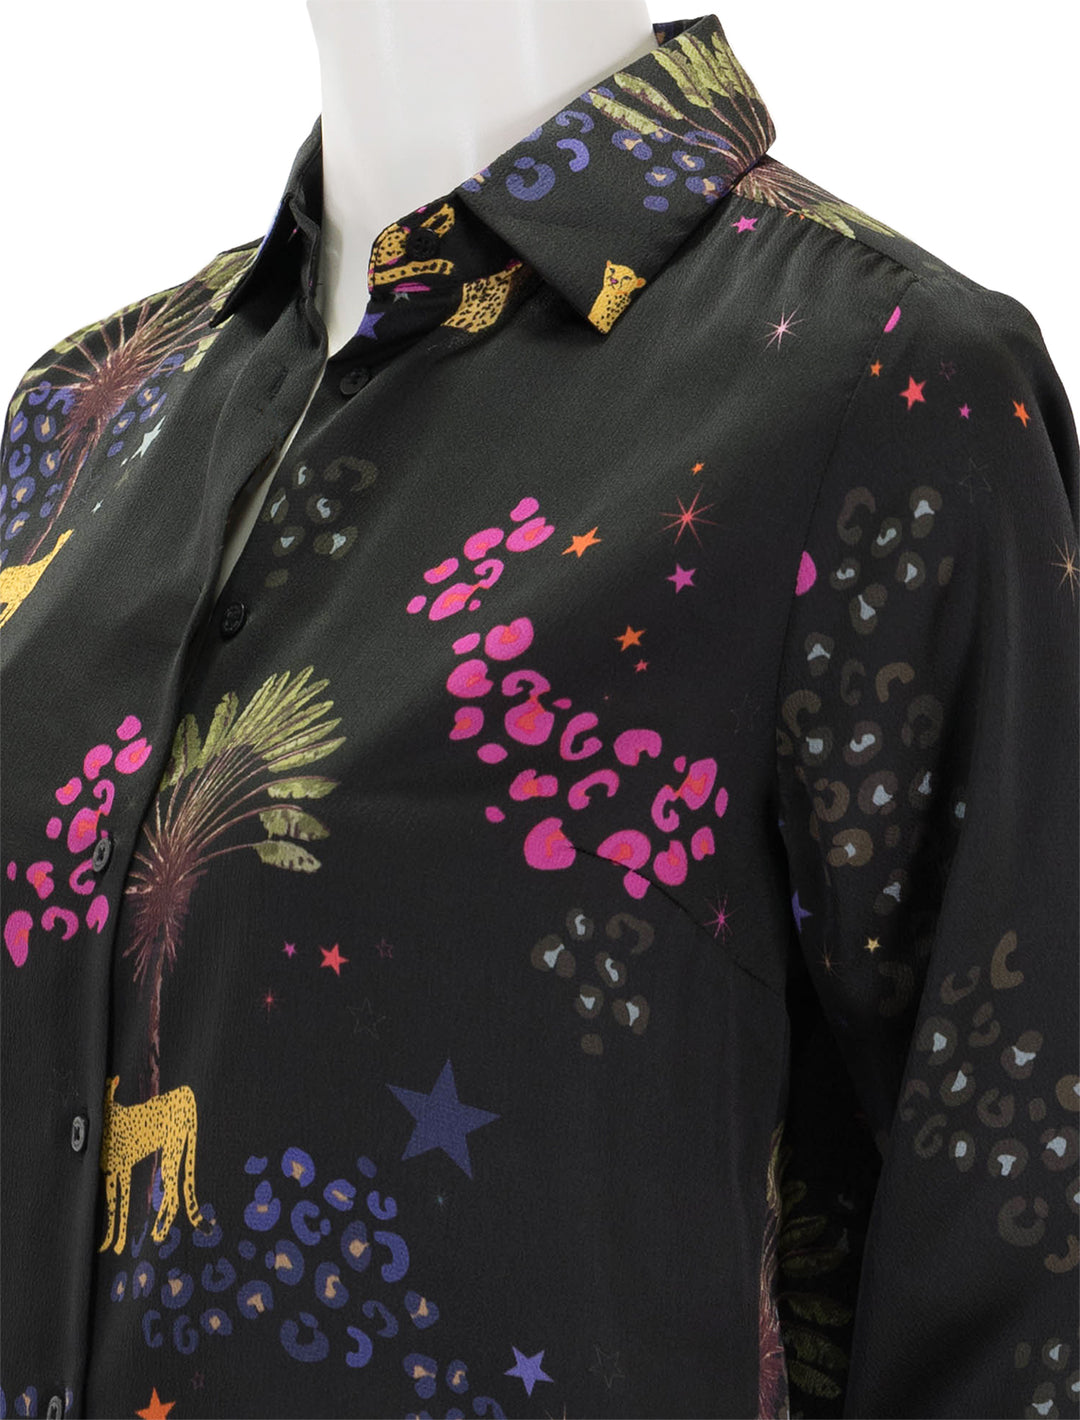 Close-up view of Vilagallo's camisa isabella black cheetah blouse.